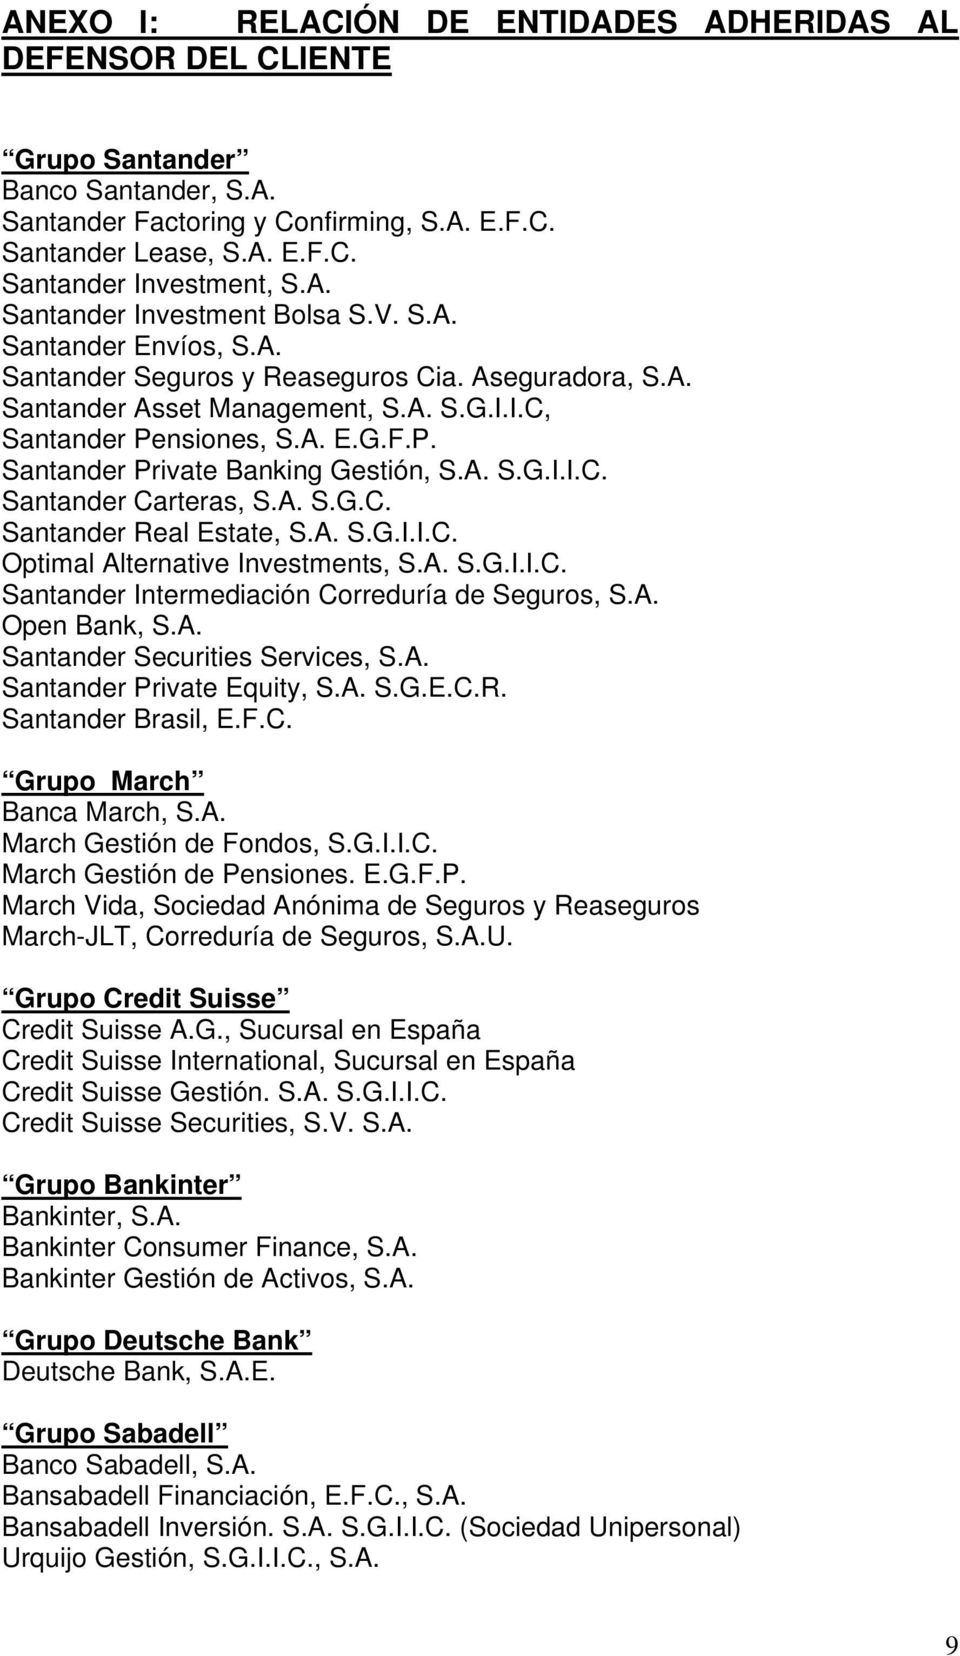 nsiones, S.A. E.G.F.P. Santander Private Banking Gestión, S.A. S.G.I.I.C. Santander Carteras, S.A. S.G.C. Santander Real Estate, S.A. S.G.I.I.C. Optimal Alternative Investments, S.A. S.G.I.I.C. Santander Intermediación Correduría de Seguros, S.